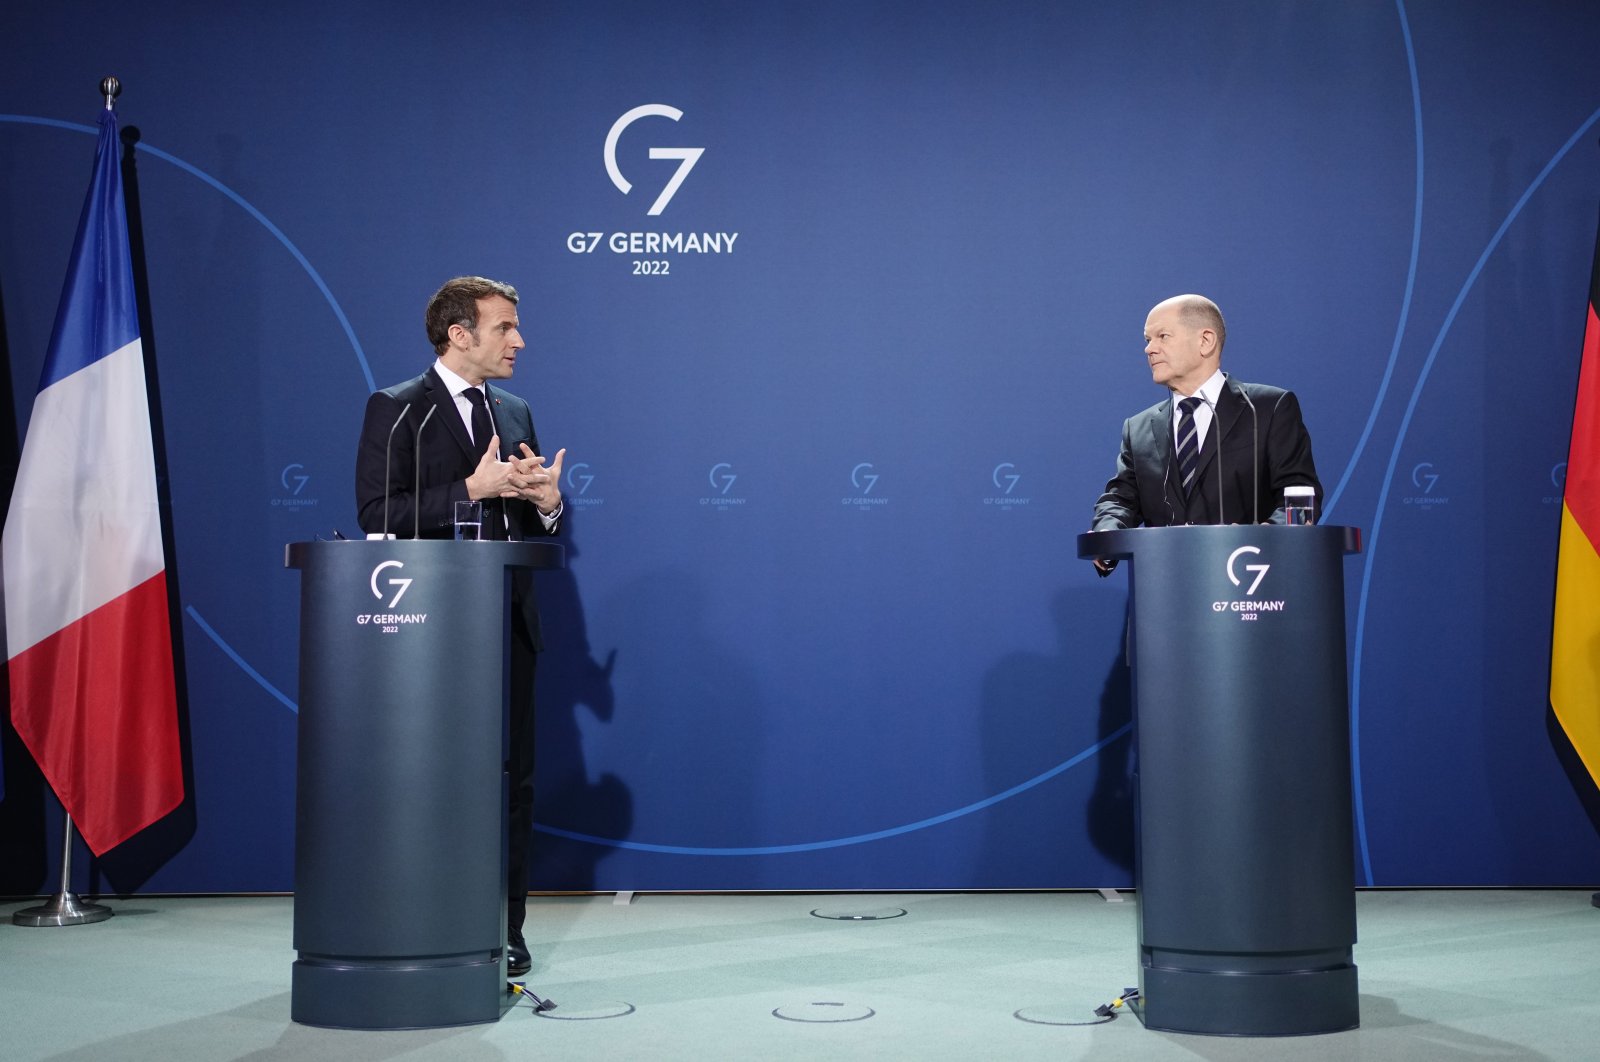 Menavigasi dinamika kompleks hubungan Prancis-Jerman